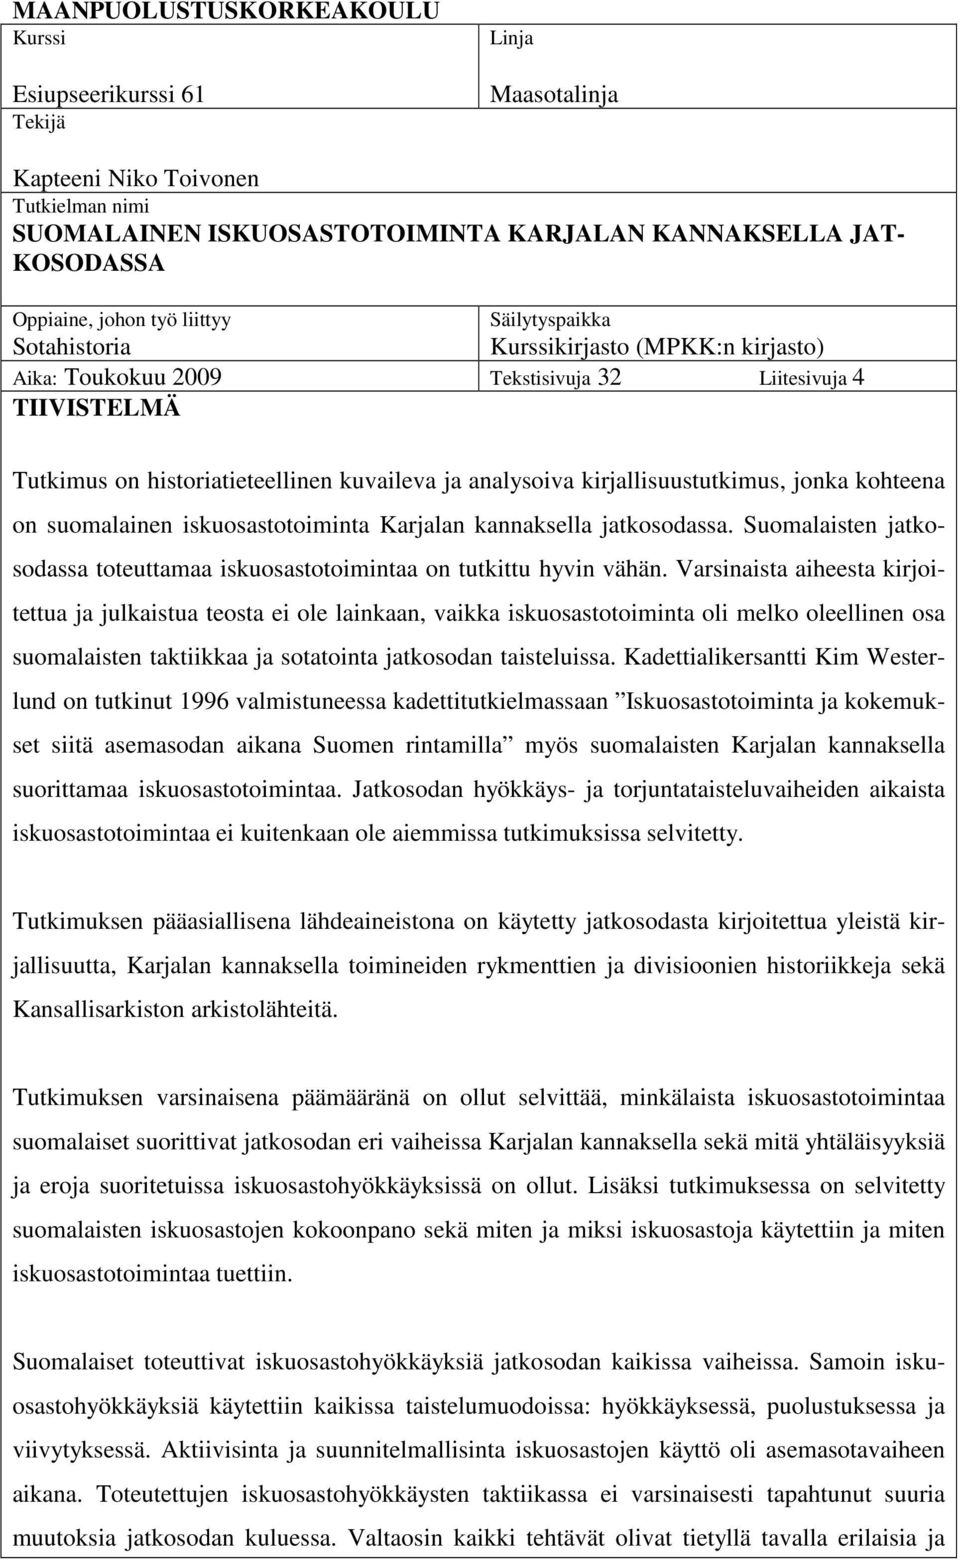 kirjallisuustutkimus, jonka kohteena on suomalainen iskuosastotoiminta Karjalan kannaksella jatkosodassa. Suomalaisten jatkosodassa toteuttamaa iskuosastotoimintaa on tutkittu hyvin vähän.